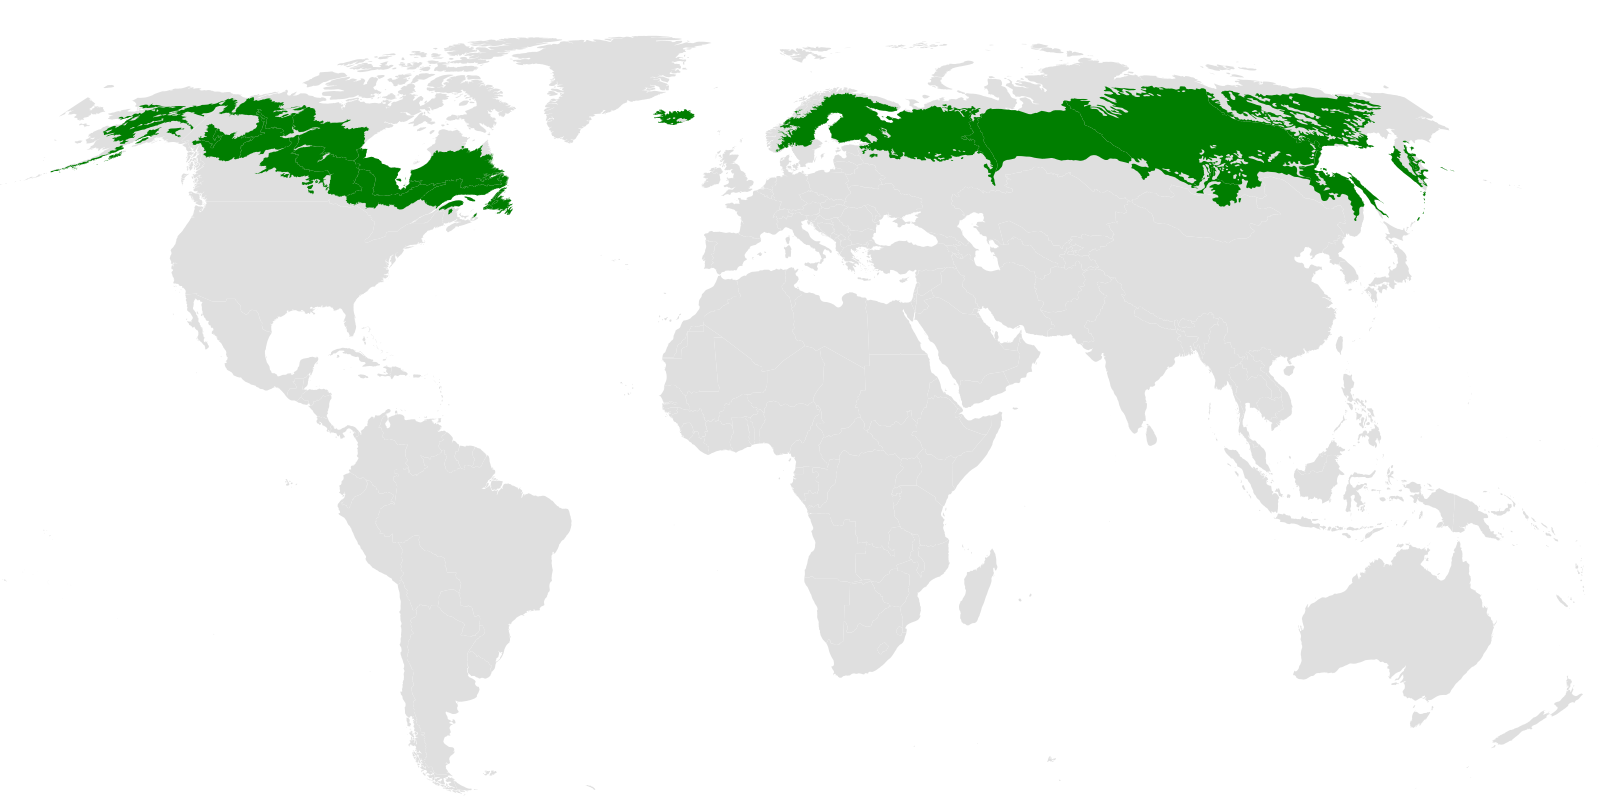 Sombreado del mapa del mundo donde se ubica el bioma tiaga (partes del norte de: Canadá, Alaska, Europa, Islandia y Rusia)